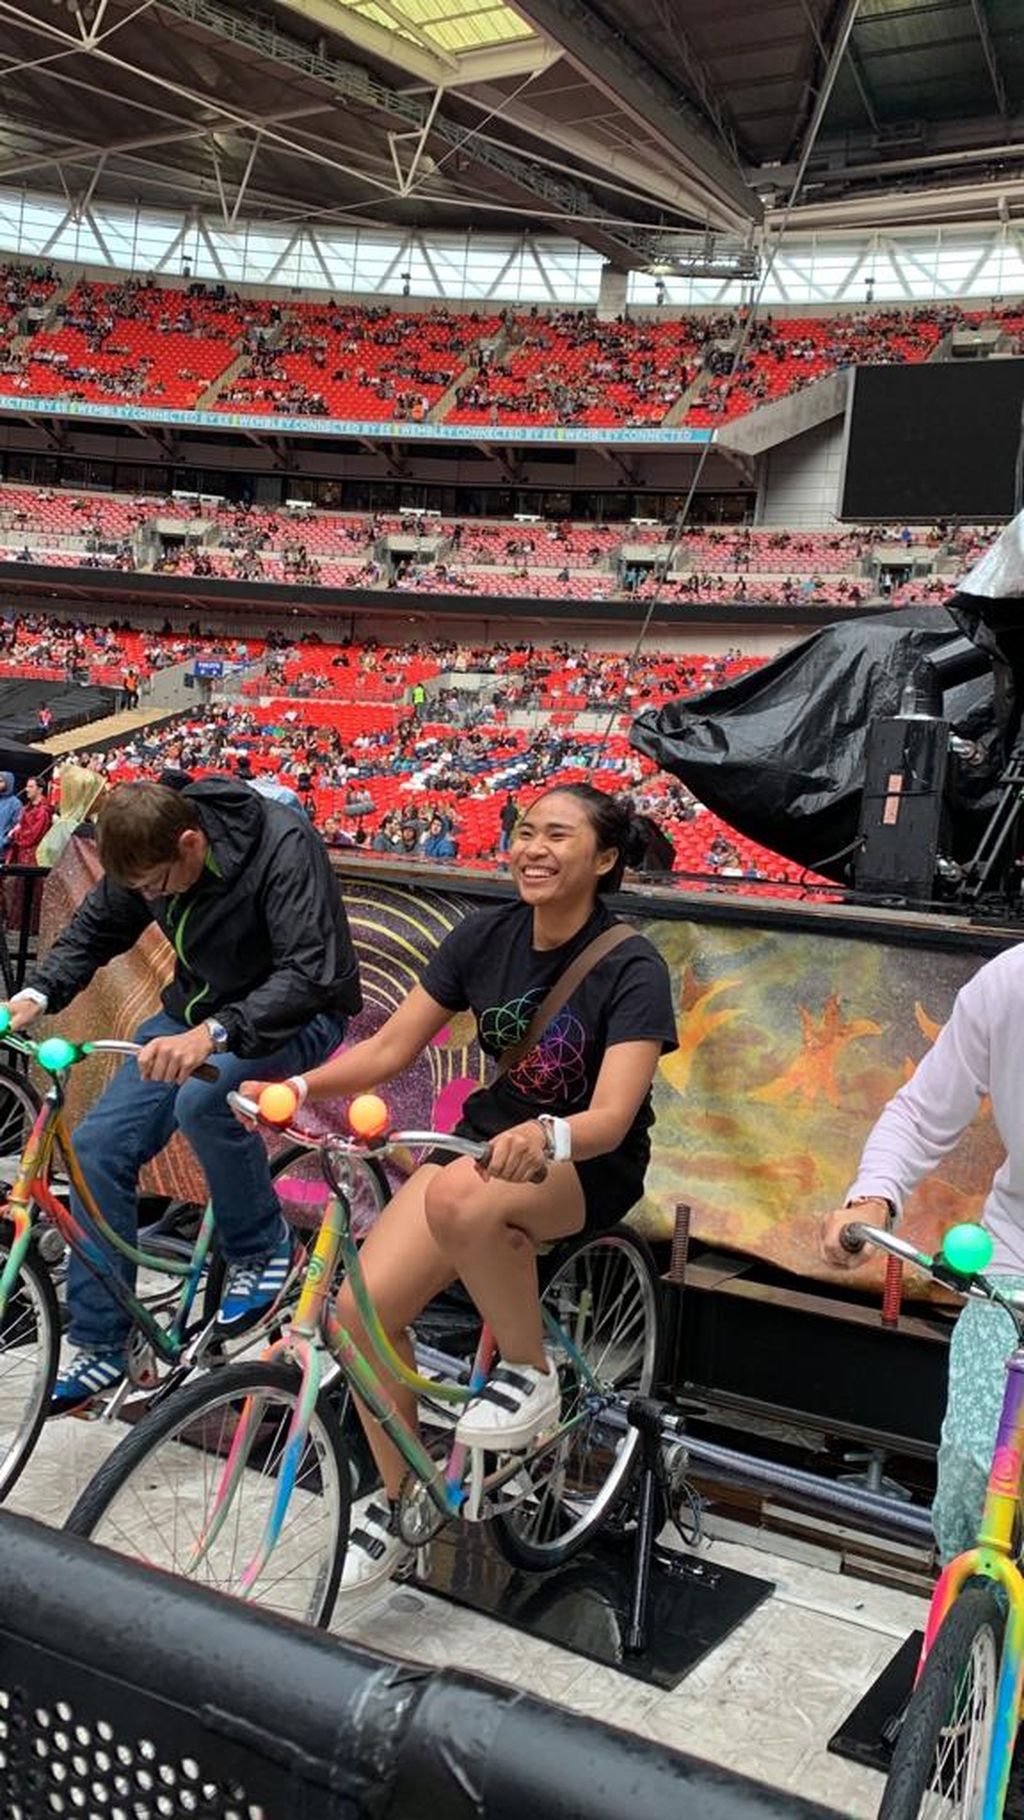 Nariswari Khairanisa Nurjaman (27), mahasiswa S-2 di Cambridge University, menjajal sepeda saat sedang menyaksikan konser Coldplay, di Inggris. Bagi Naris, bersepeda merupakan cara menjelajah kota.